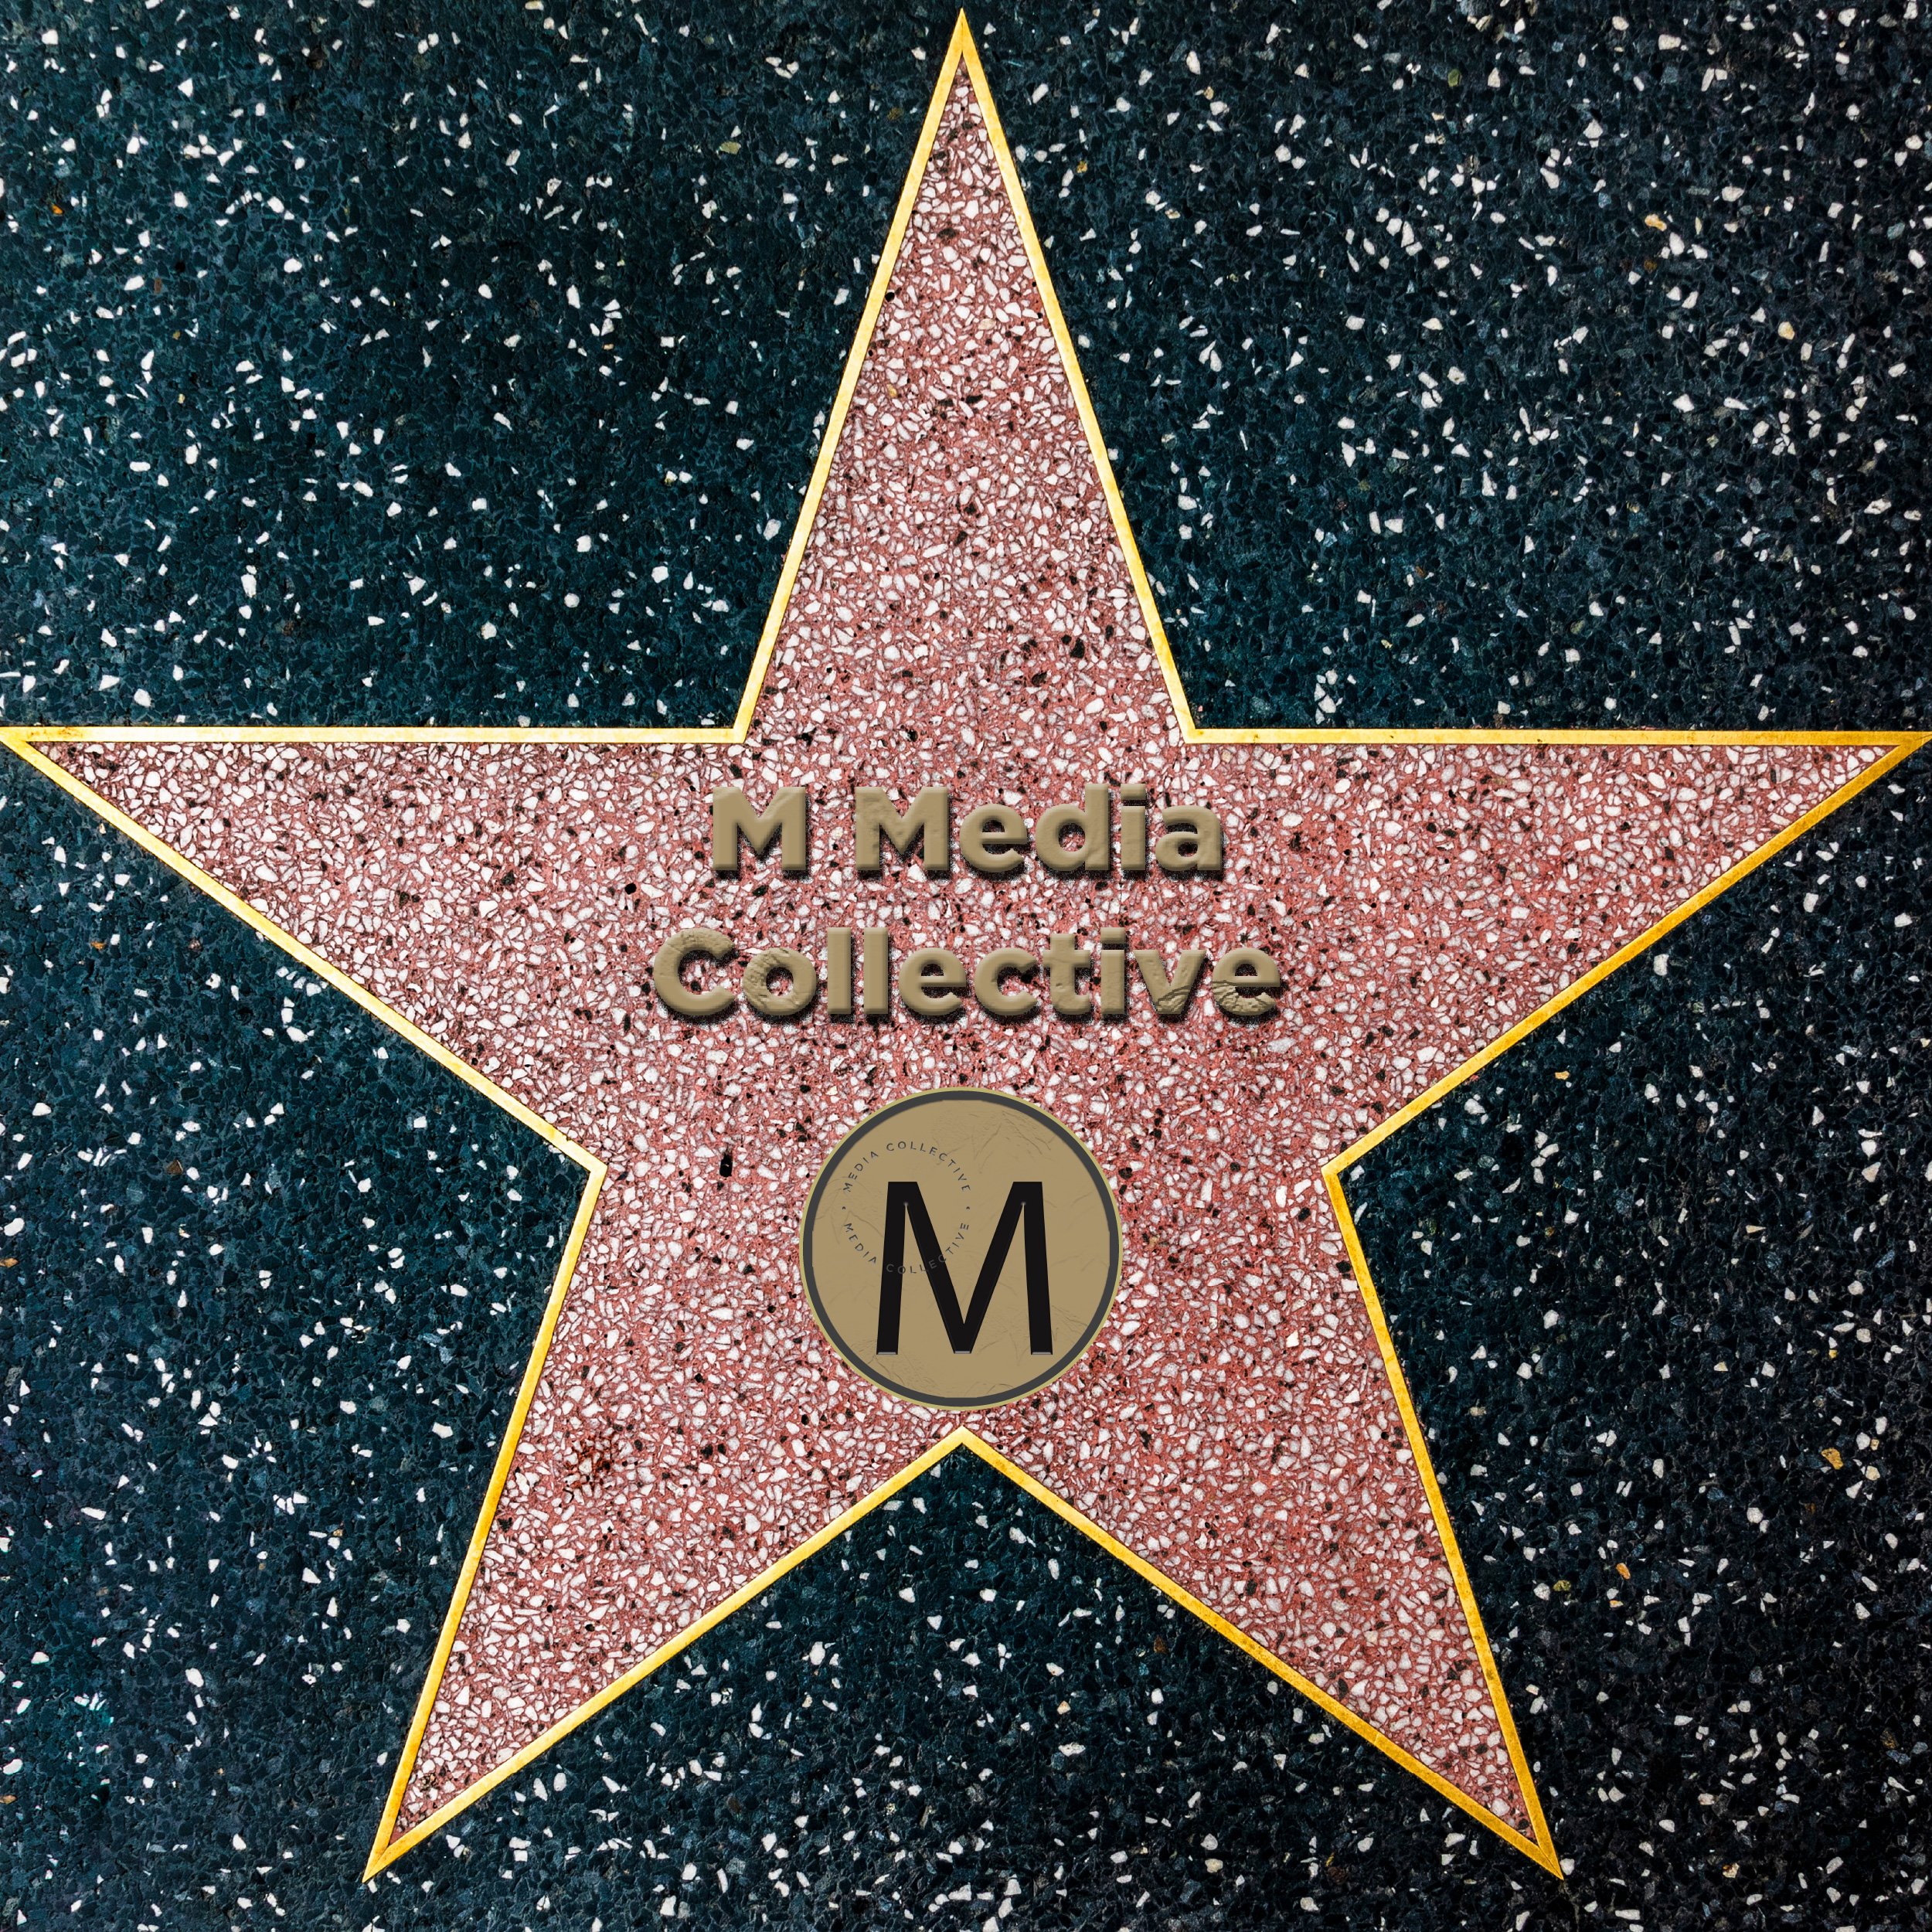 M Media Collective - Media Sponsor